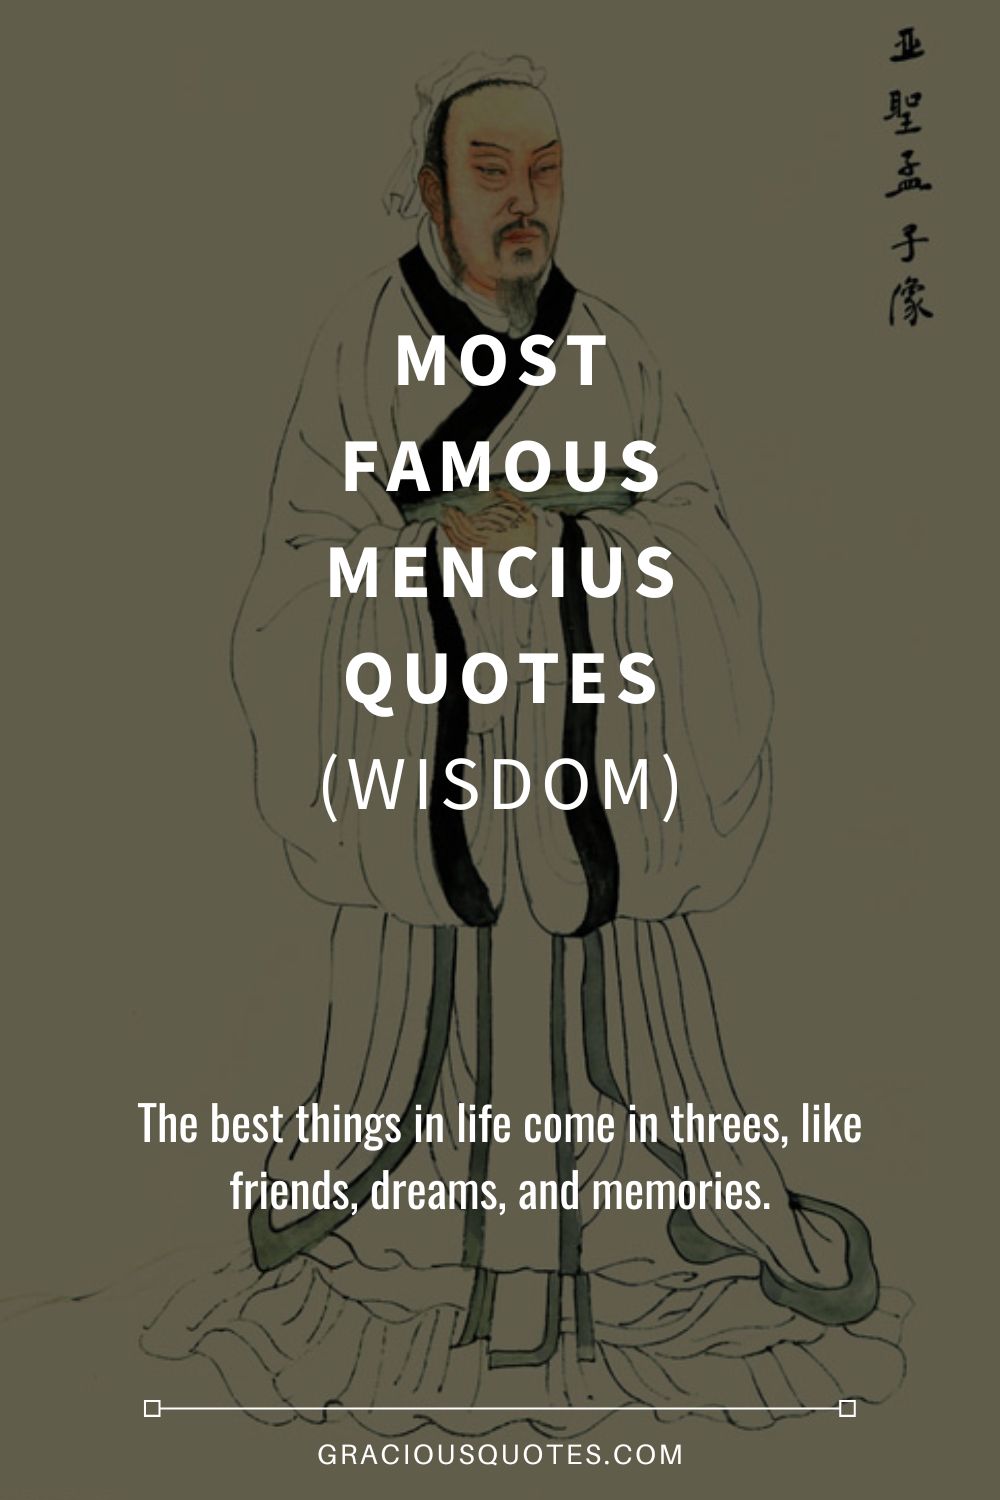 Most Famous Mencius Quotes (WISDOM) - Gracious Quotes